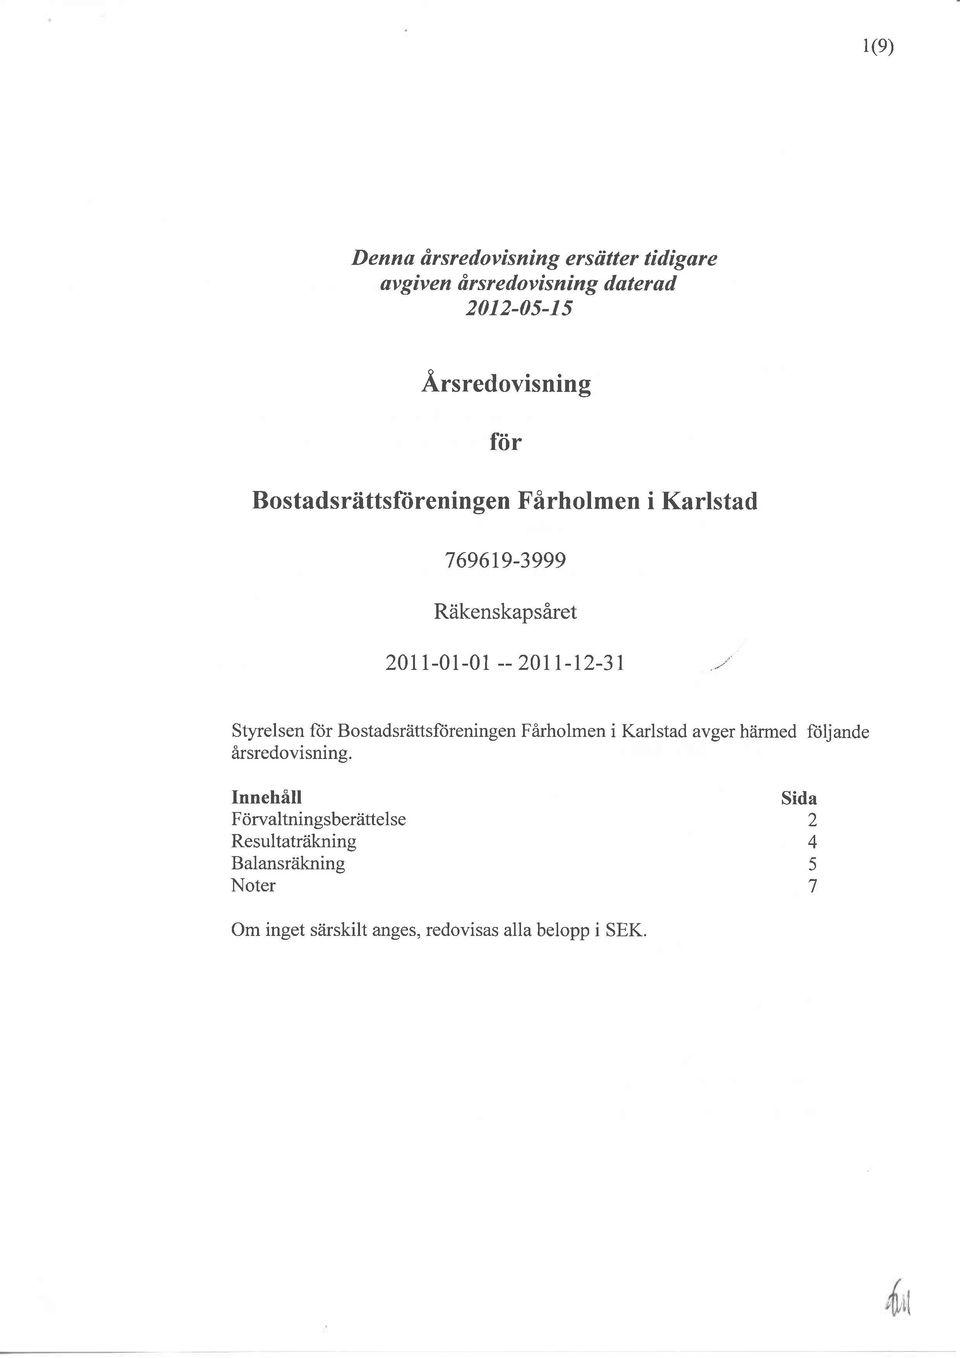 u Styrelsen for Bostadsrättsftireningen Farholmen i Karlstad avger härmed ftiljande arsredovisning.